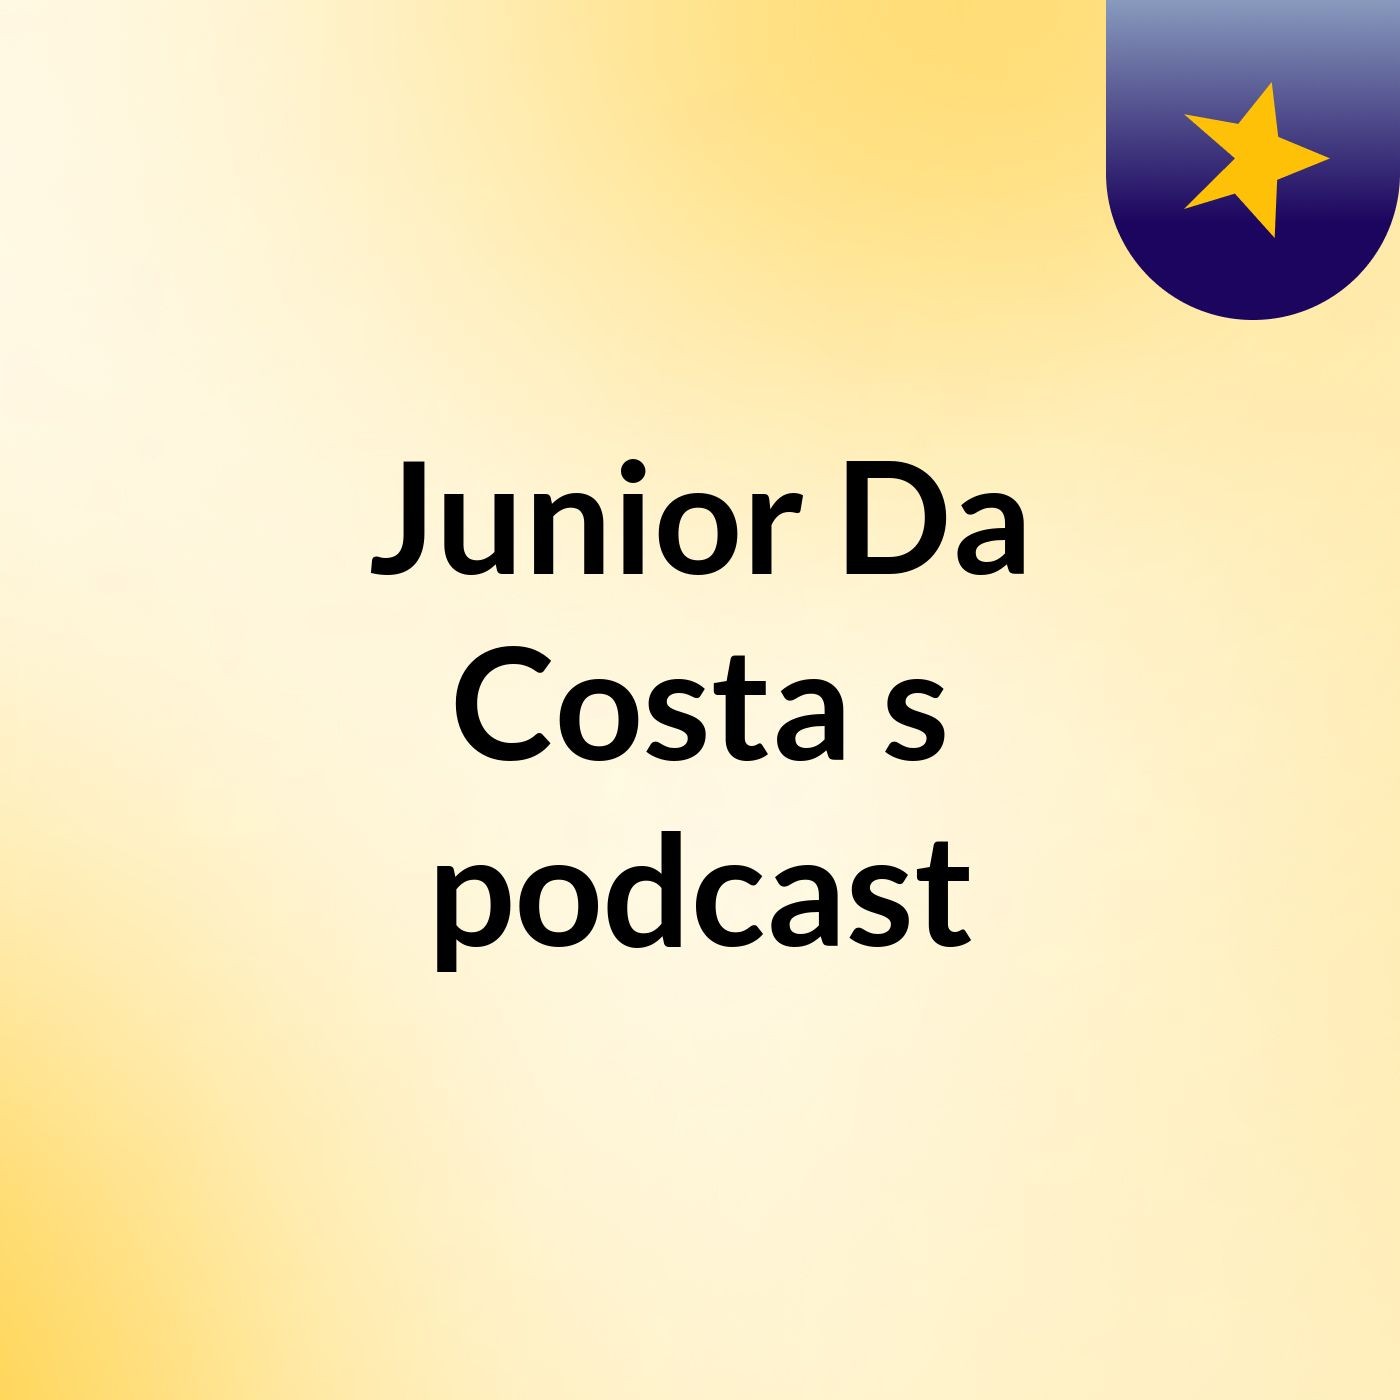 Episode 9 - Junior Da Costa's podcast